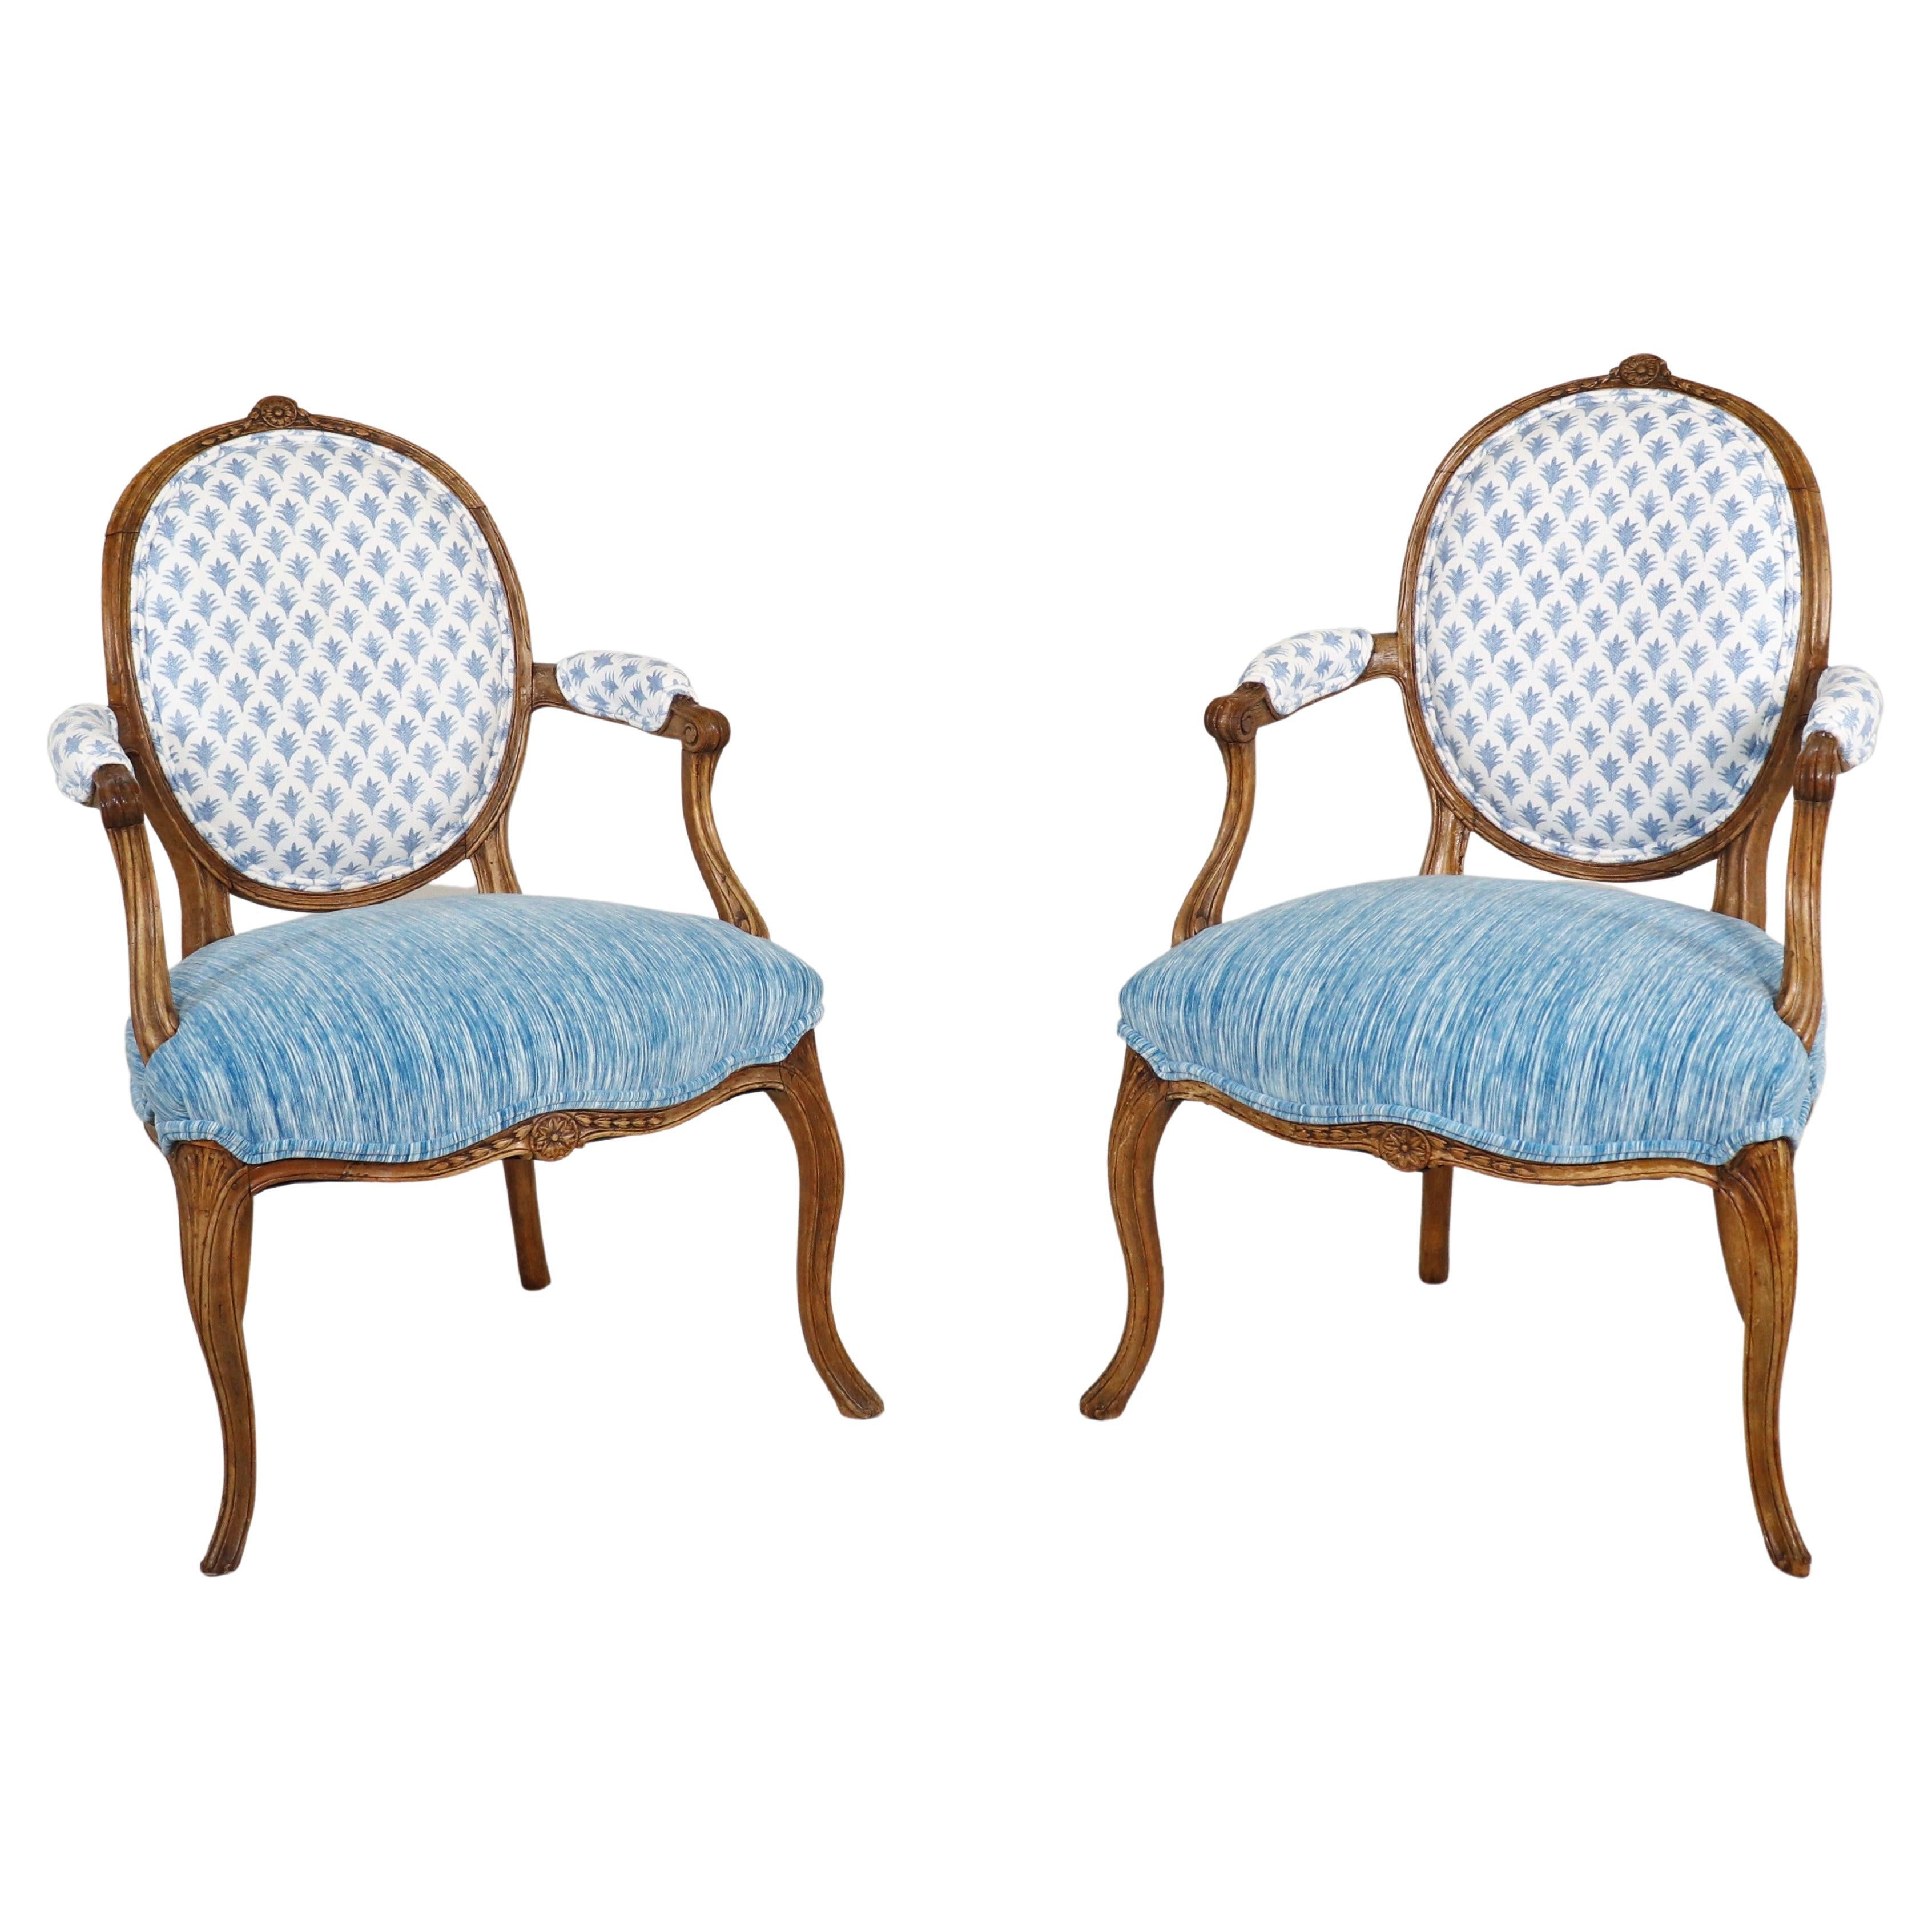 Paire de fauteuils de style Régence du milieu du 19e siècle avec tissus modernes